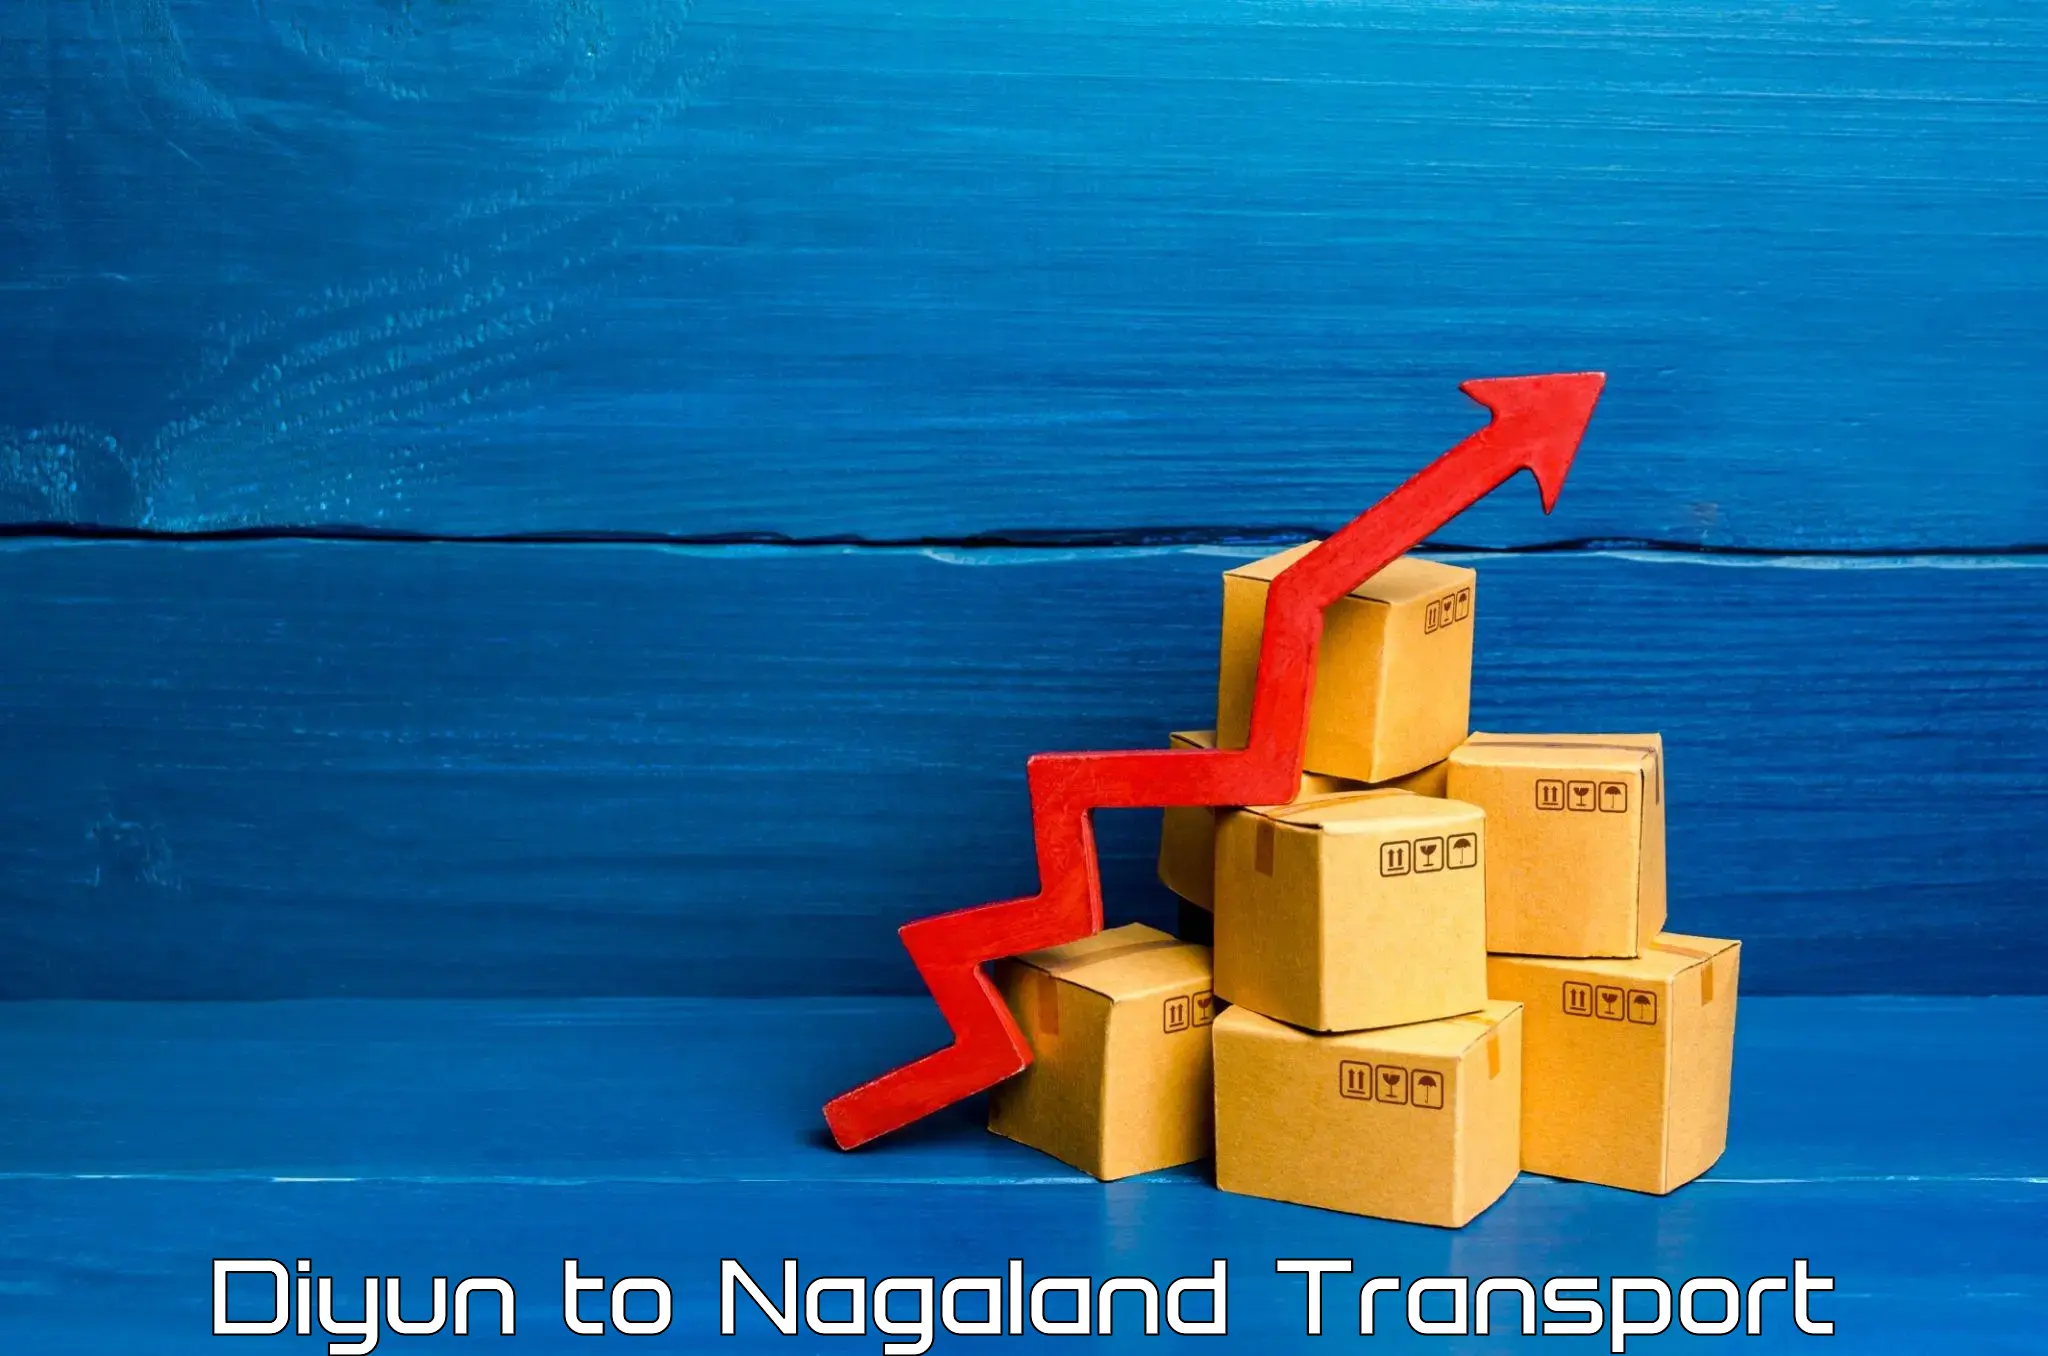 International cargo transportation services Diyun to NIT Nagaland